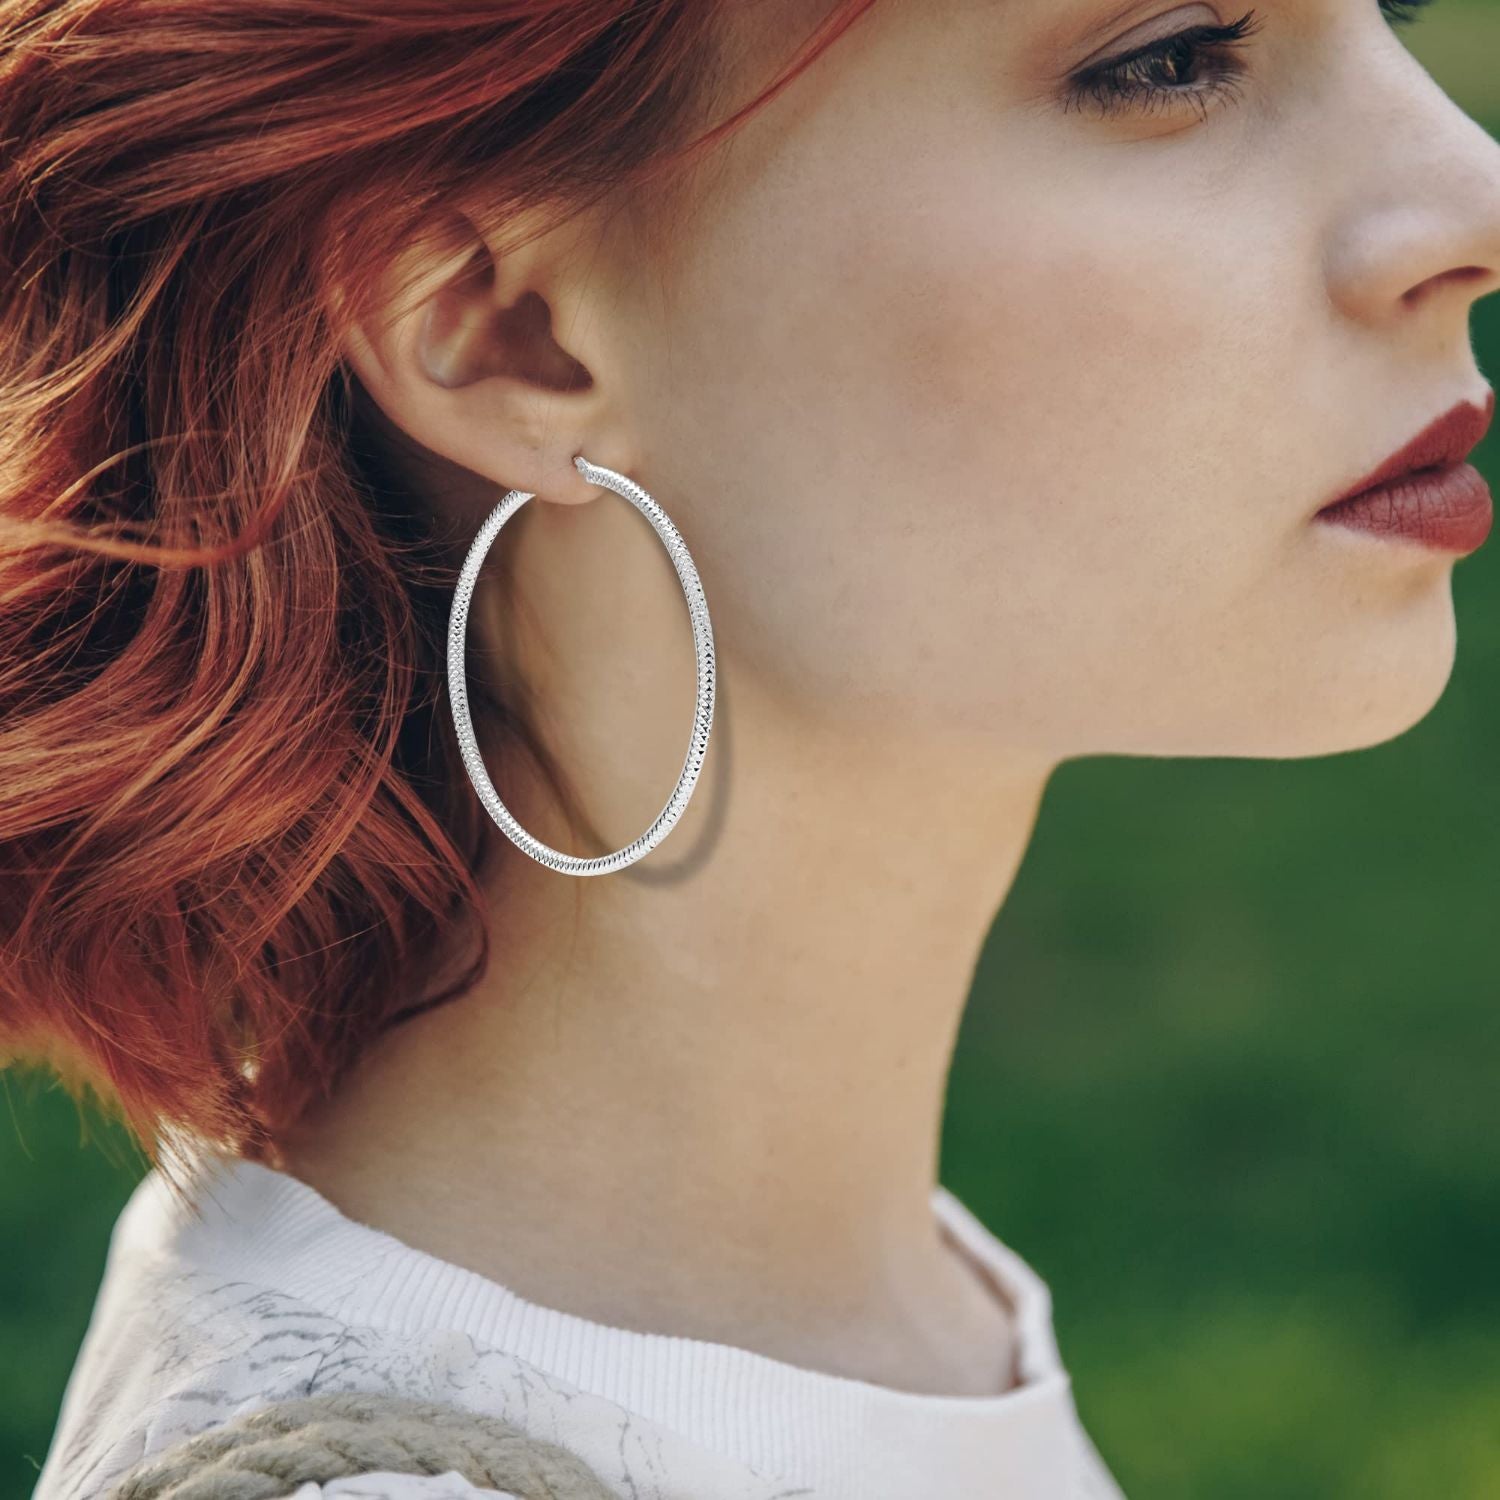 925 Sterling Silver Large Diamond-Cut Classic Italian Design Hoop Earrings for Women 70MM